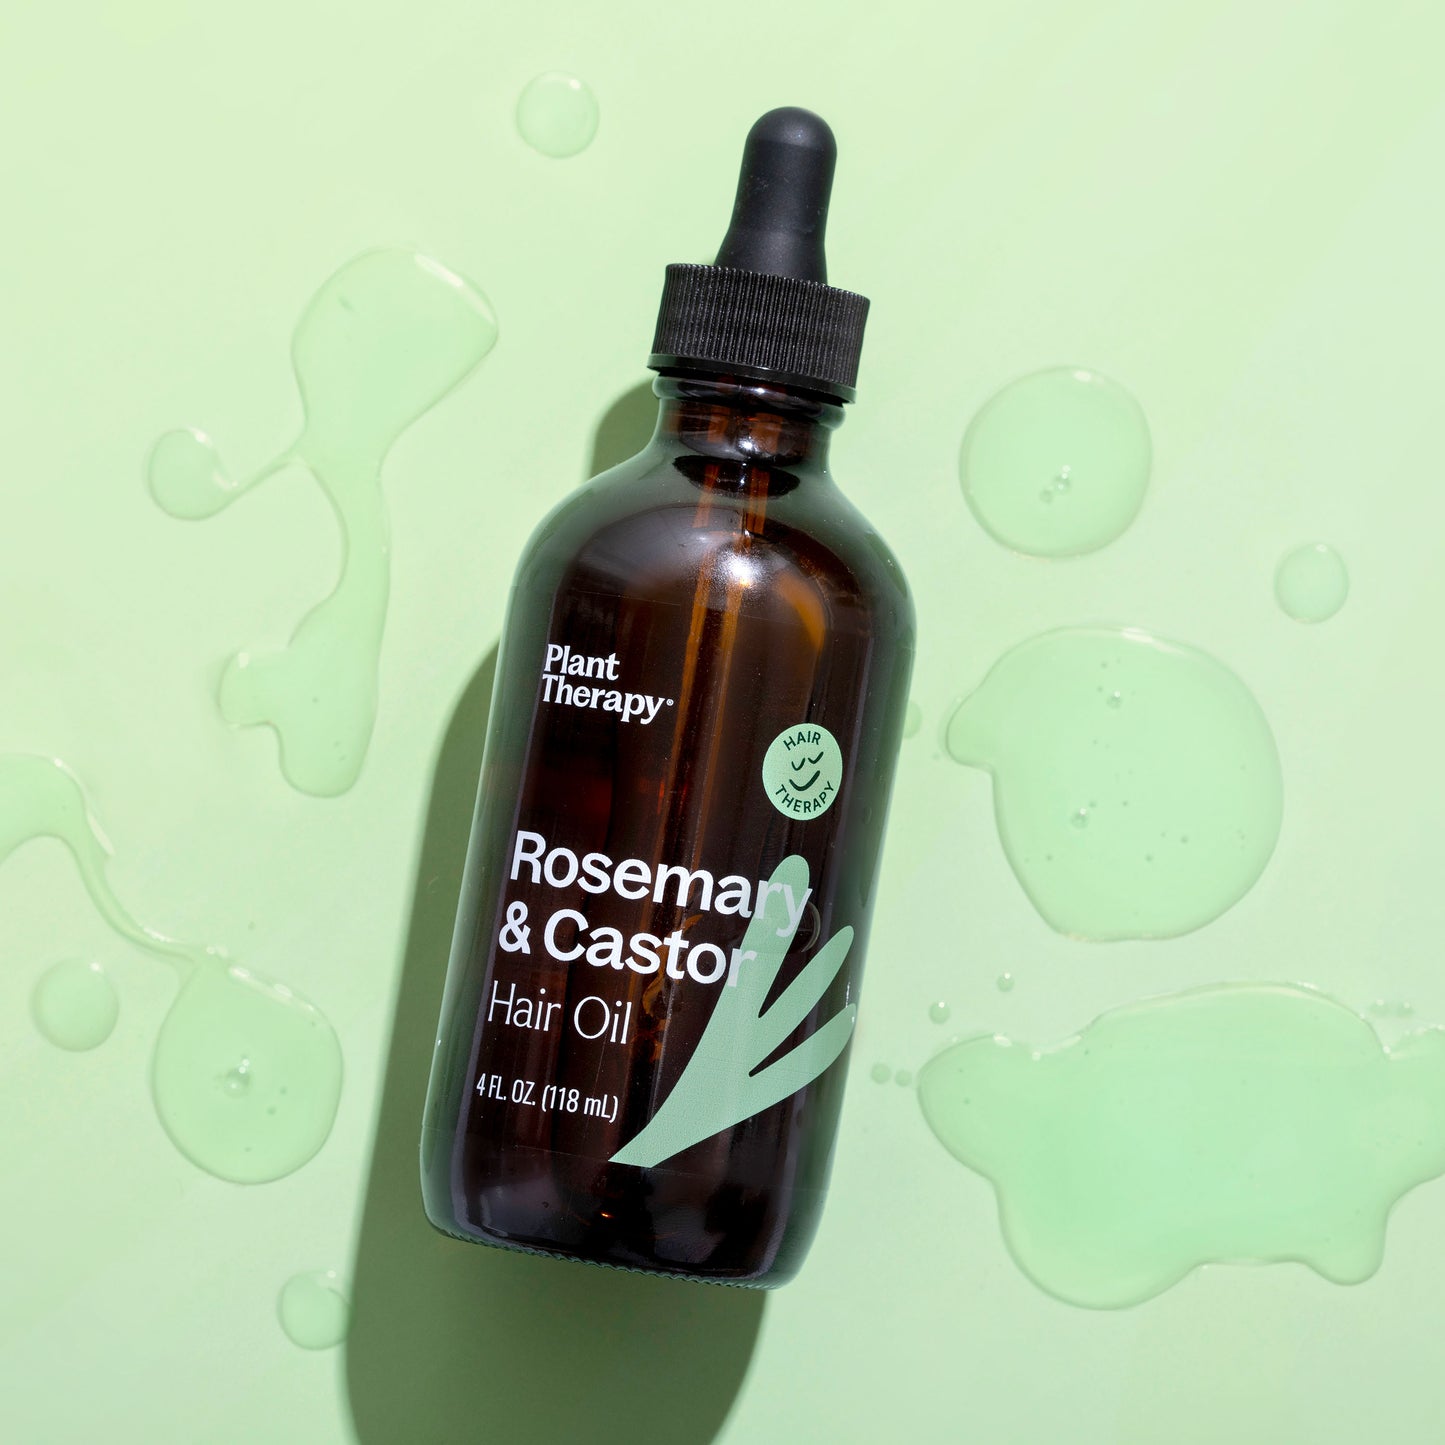 Rosemary & Castor Hair Oil